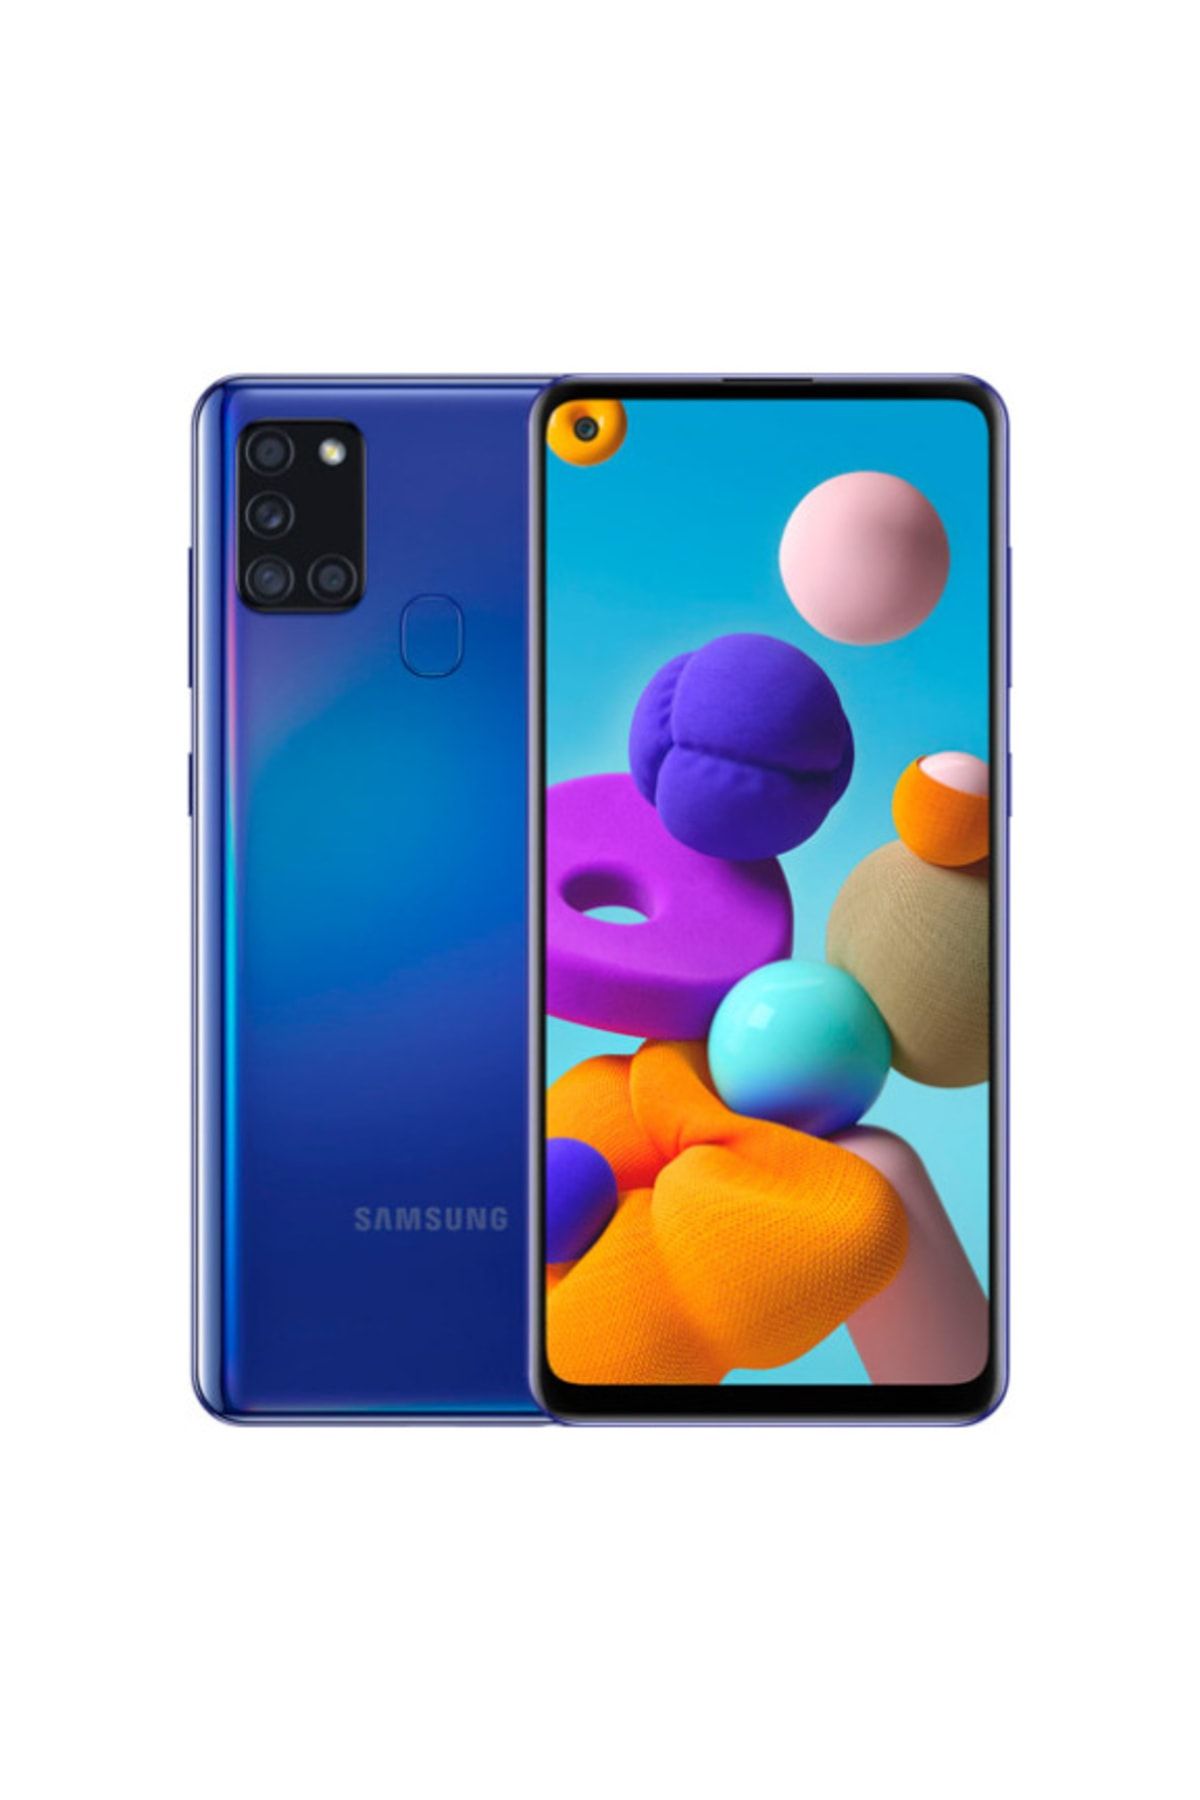 Samsung Yenilenmiş Galaxy A21s 64 GB Mavi A Grade